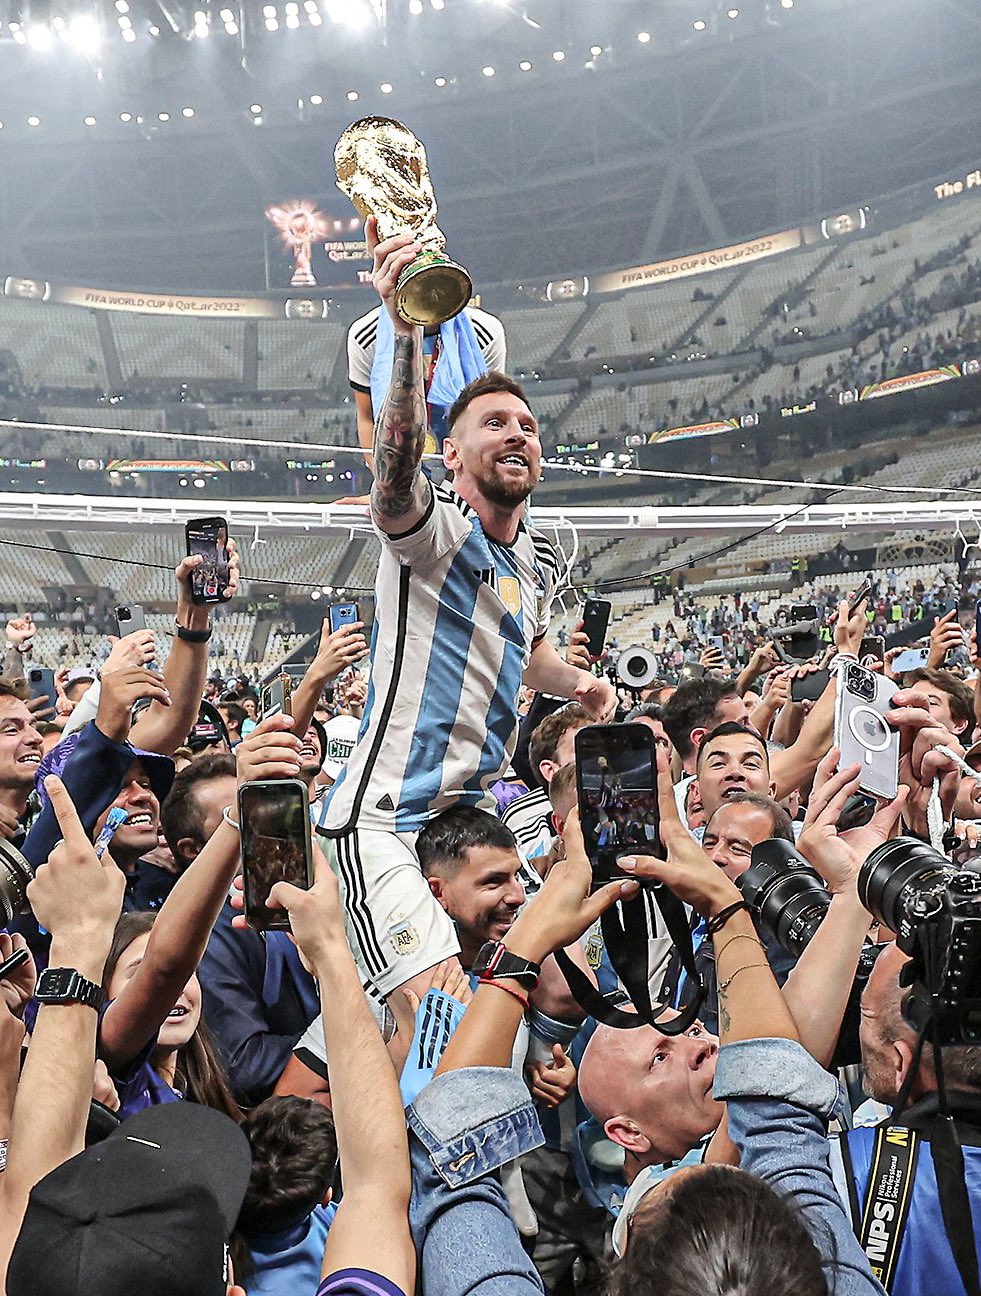 Bức ảnh Messi rước cúp trên sân là một hình ảnh cực kỳ ấn tượng, đầy cảm xúc, thể hiện khí thế chiến thắng của đội tuyển Argentina tại World Cup. Hãy cùng xem và cảm nhận nhé!